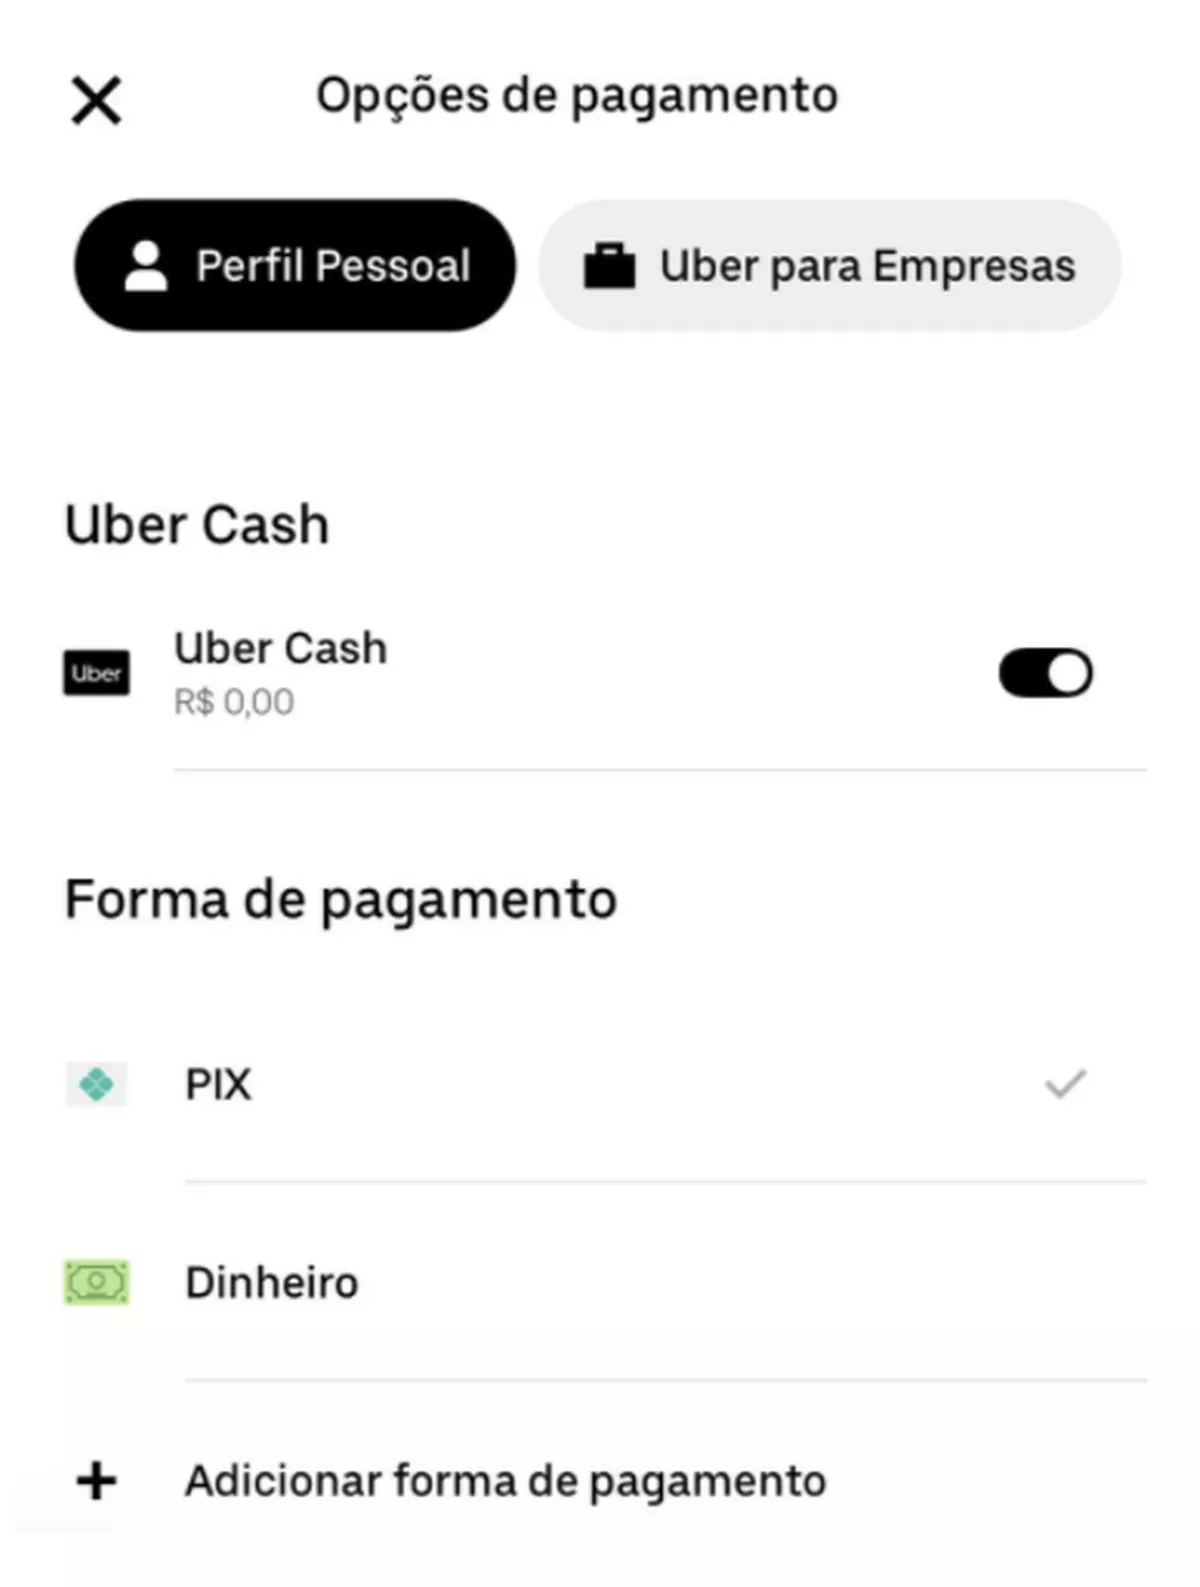 Uber passa a aceitar Pix como forma de pagamento em todo Brasil